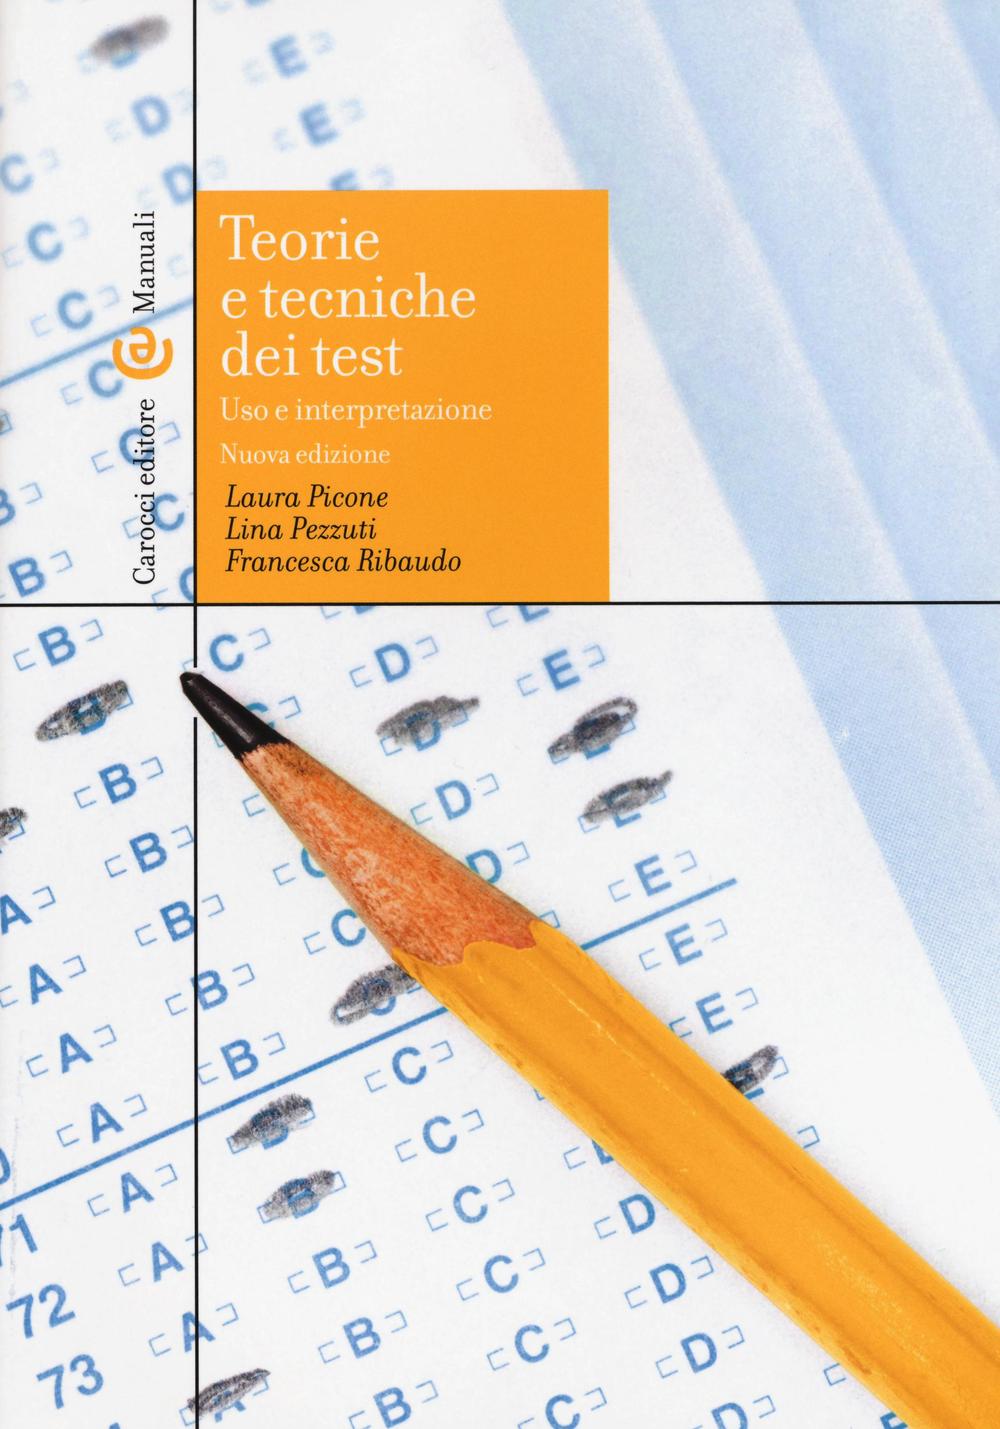 Kniha Teorie e tecniche dei test Laura Picone